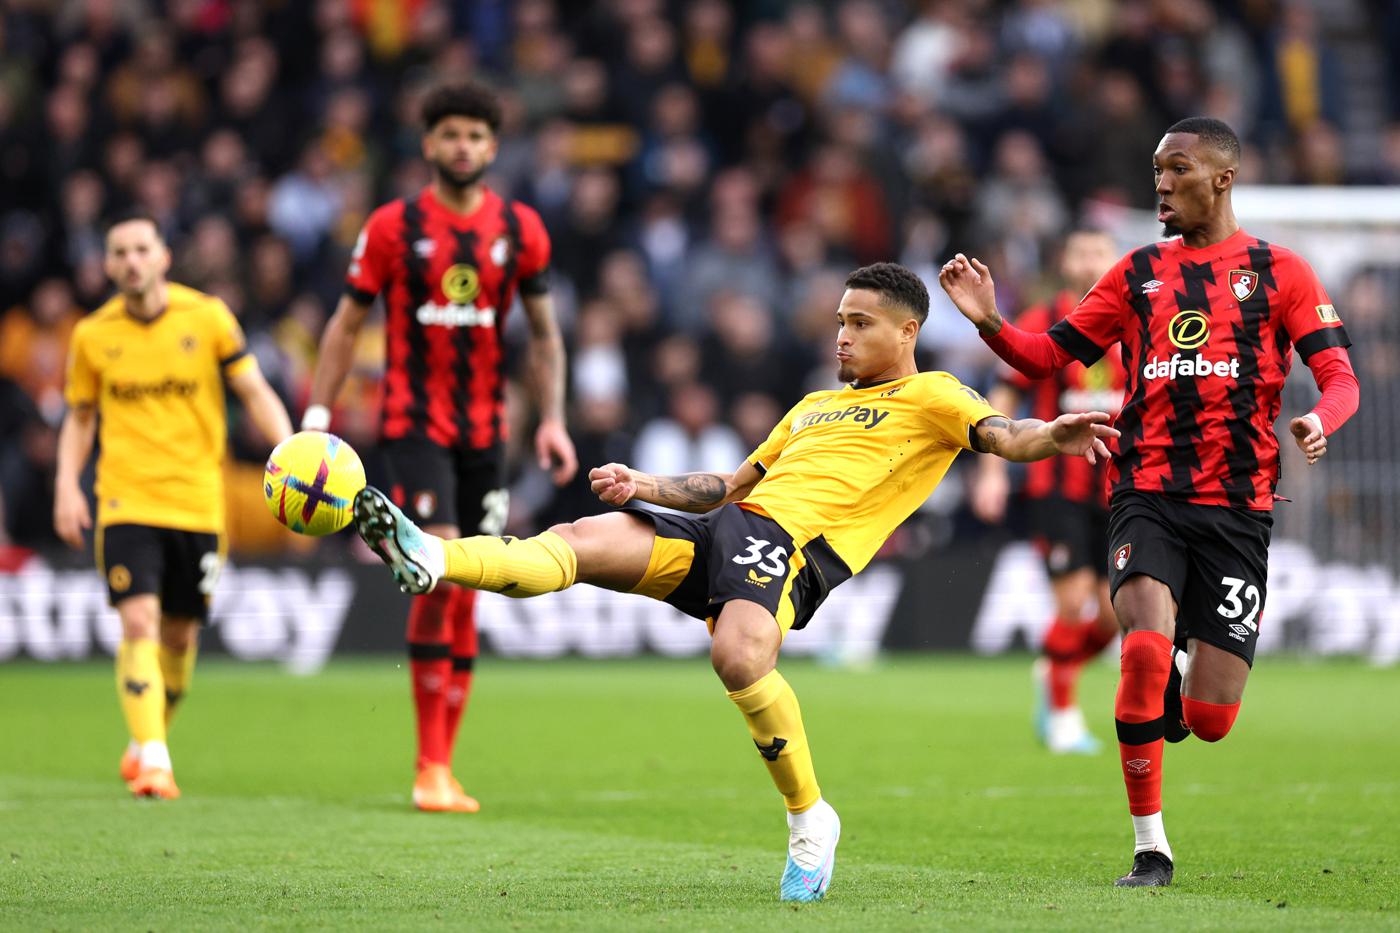 Wolverhampton - Bournemouth - 0:1. Englische Meisterschaft, Runde 24